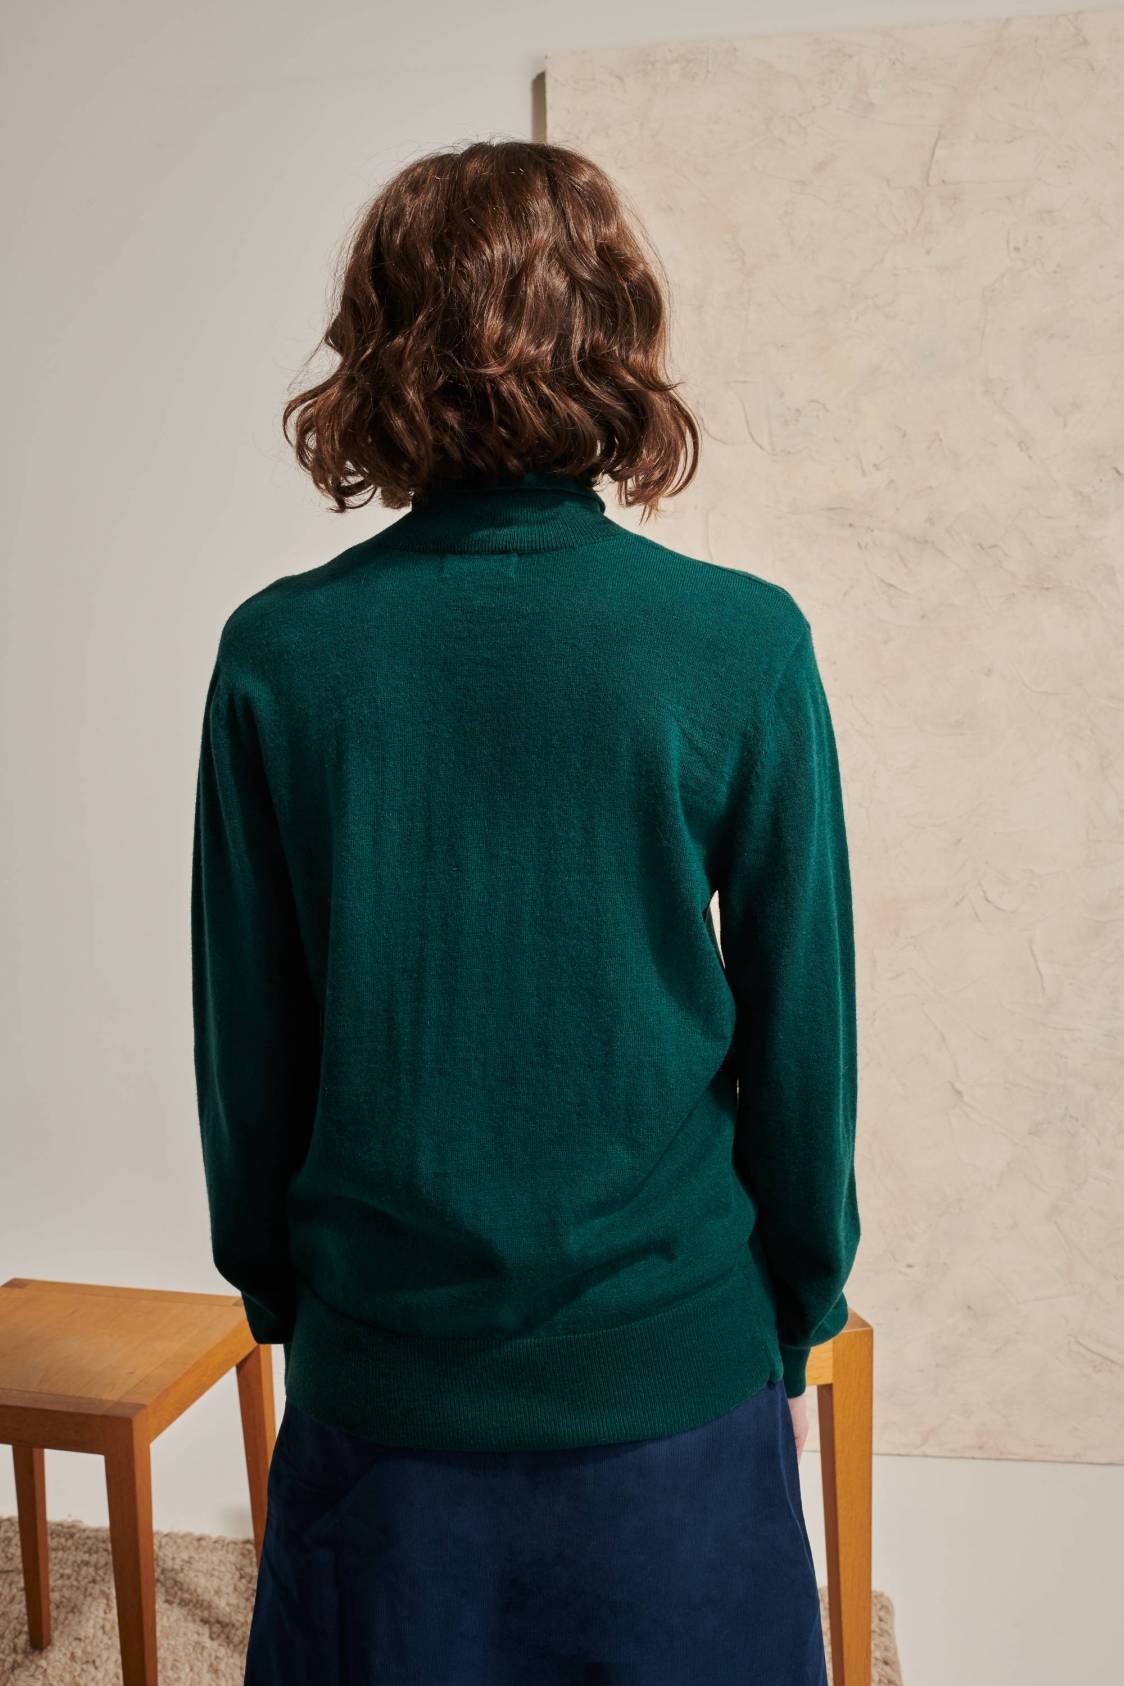 Screen-printed Sweater